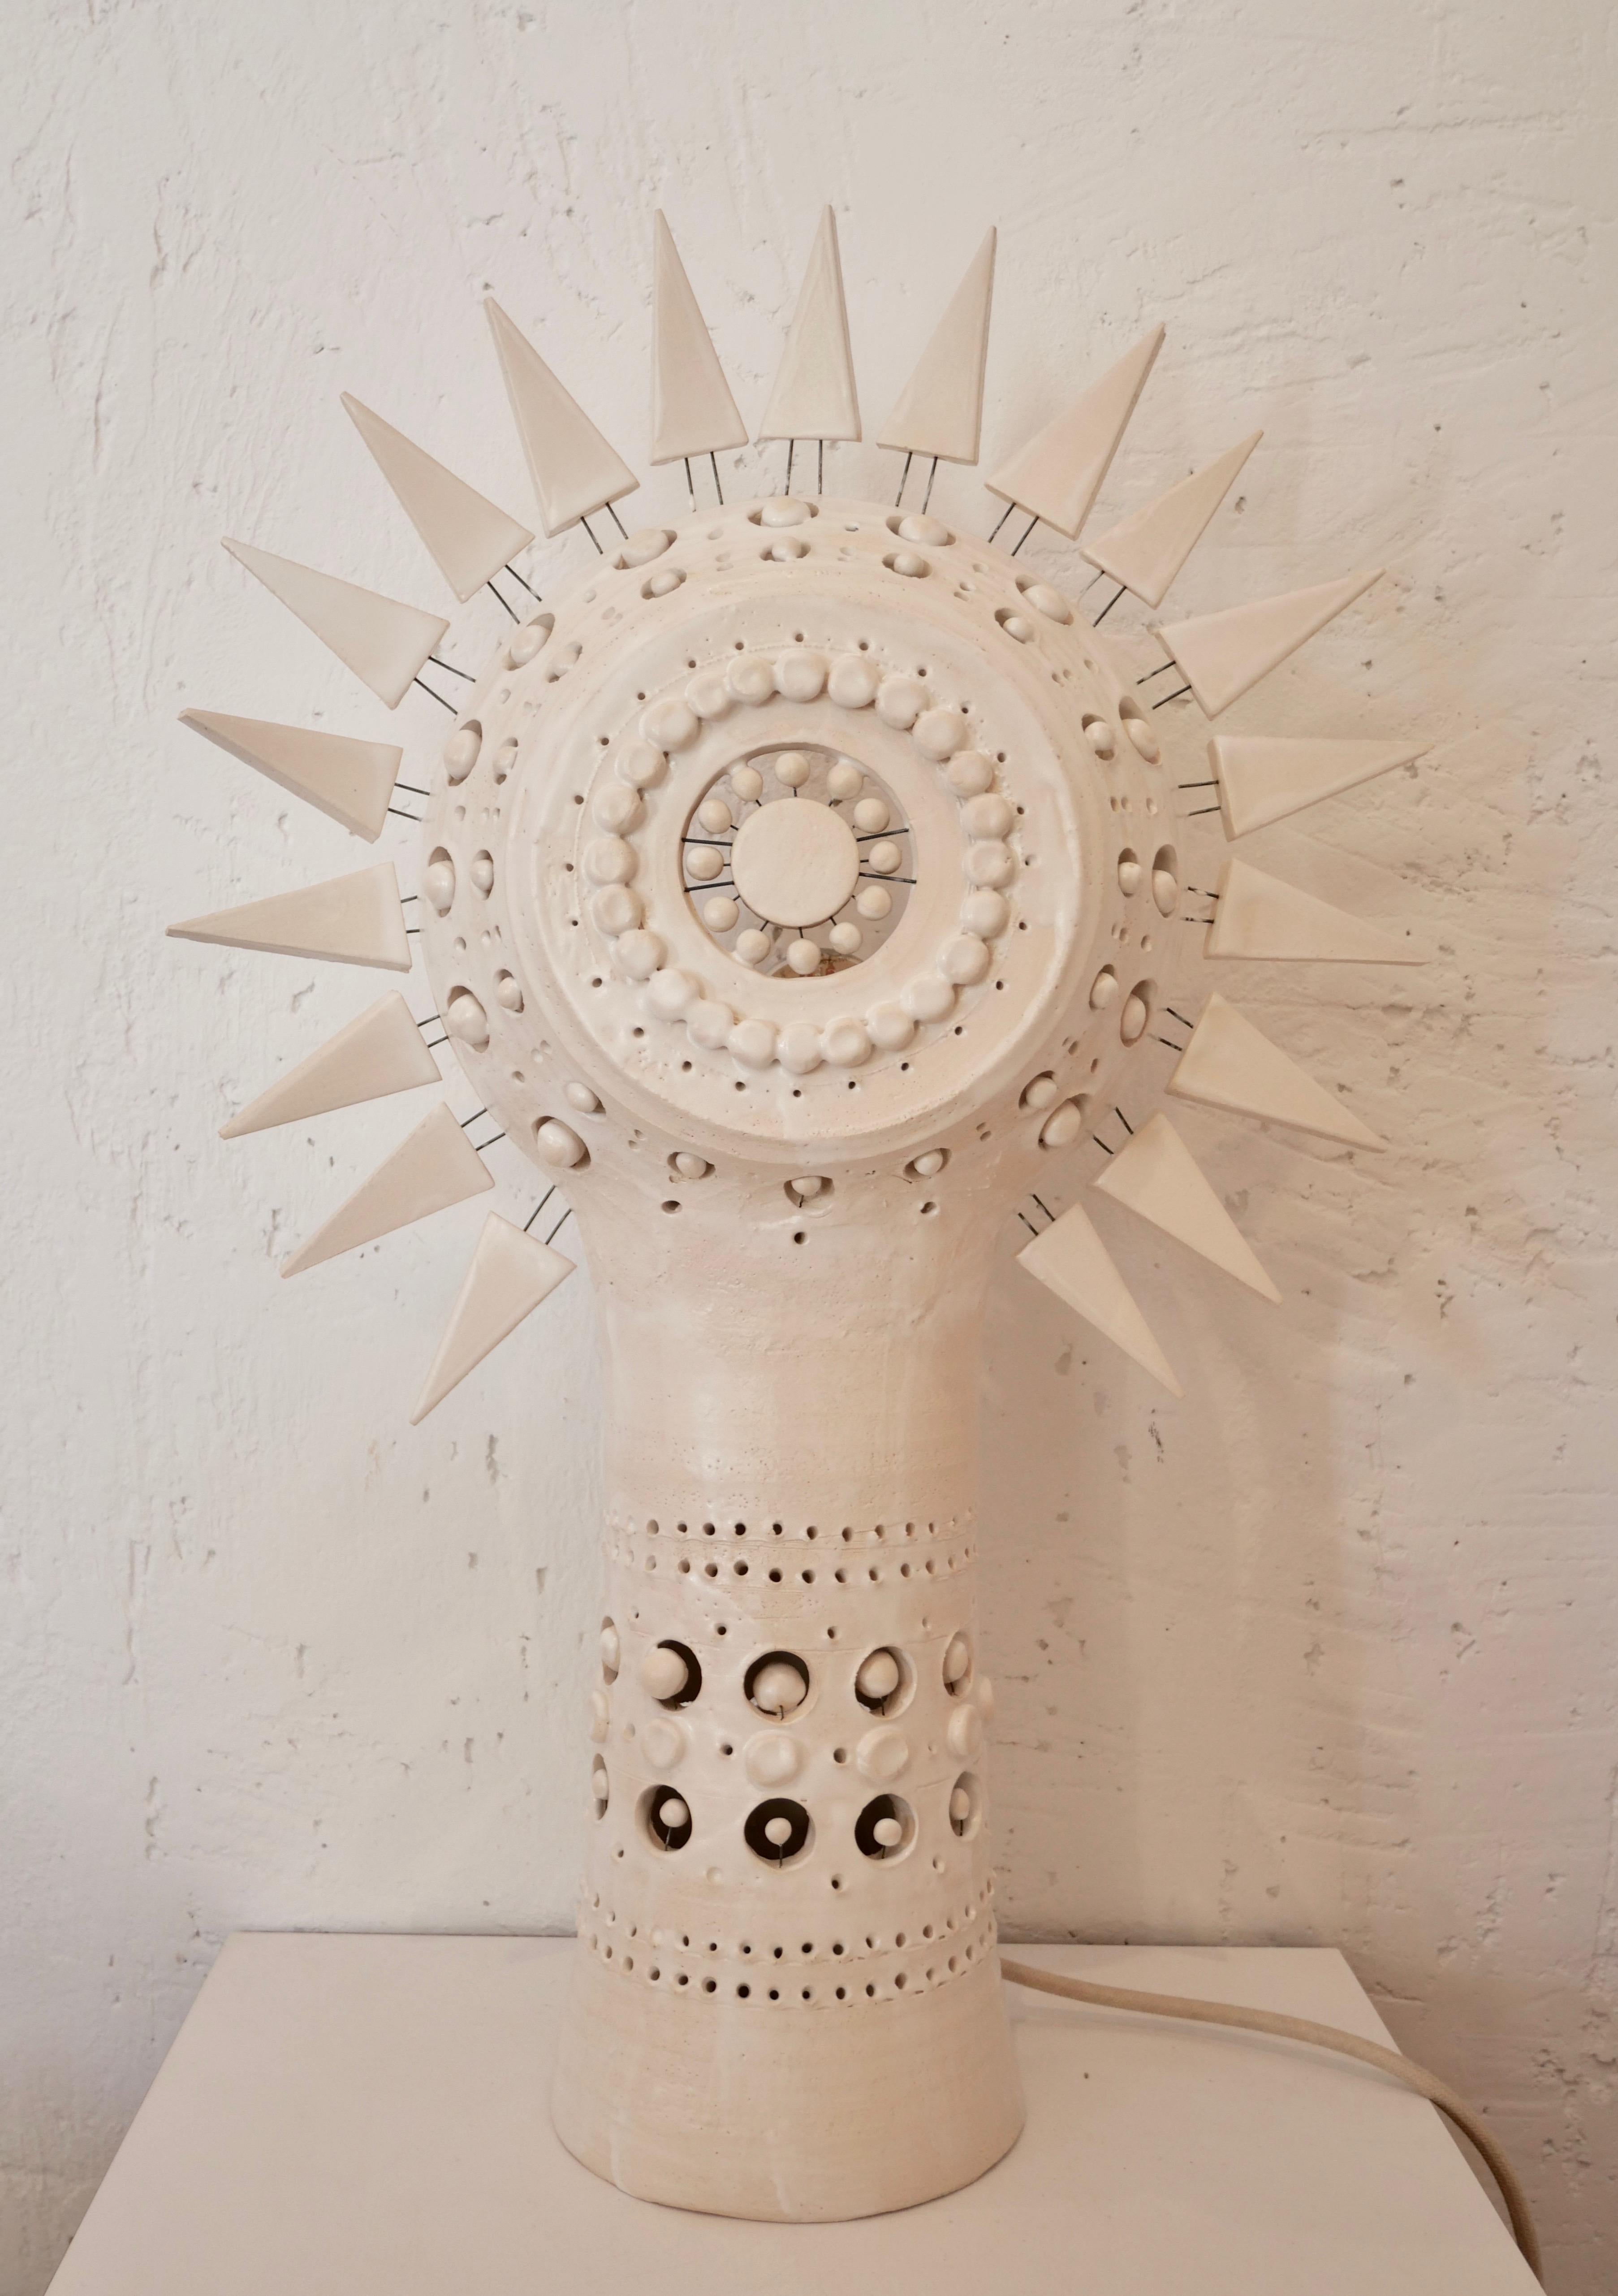 Sun Tischleuchte aus weiß emaillierter Keramik, eine Tischleuchte, die in der Nacht ein erstaunliches Lichterlebnis und tagsüber eine beeindruckende skulpturale Präsenz in Ihren Raum bringt. Ungefähre Maße: Höhe 57 cm x Breite 38 cm. Vom Künstler